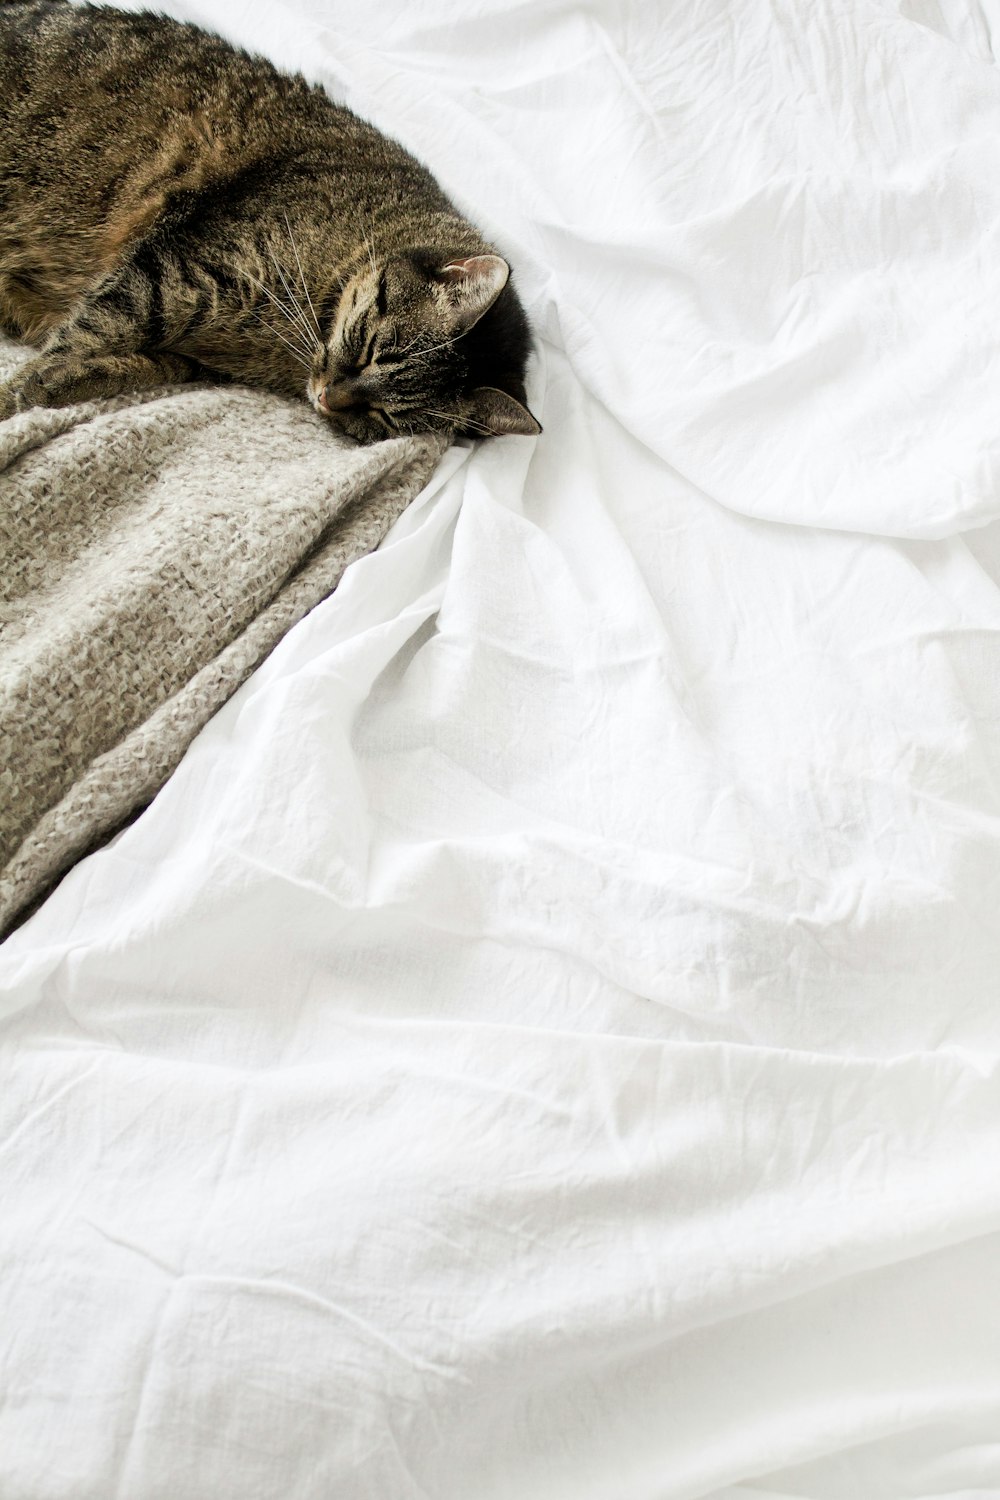 braun getigerte Katze, die auf weißem Textil liegt